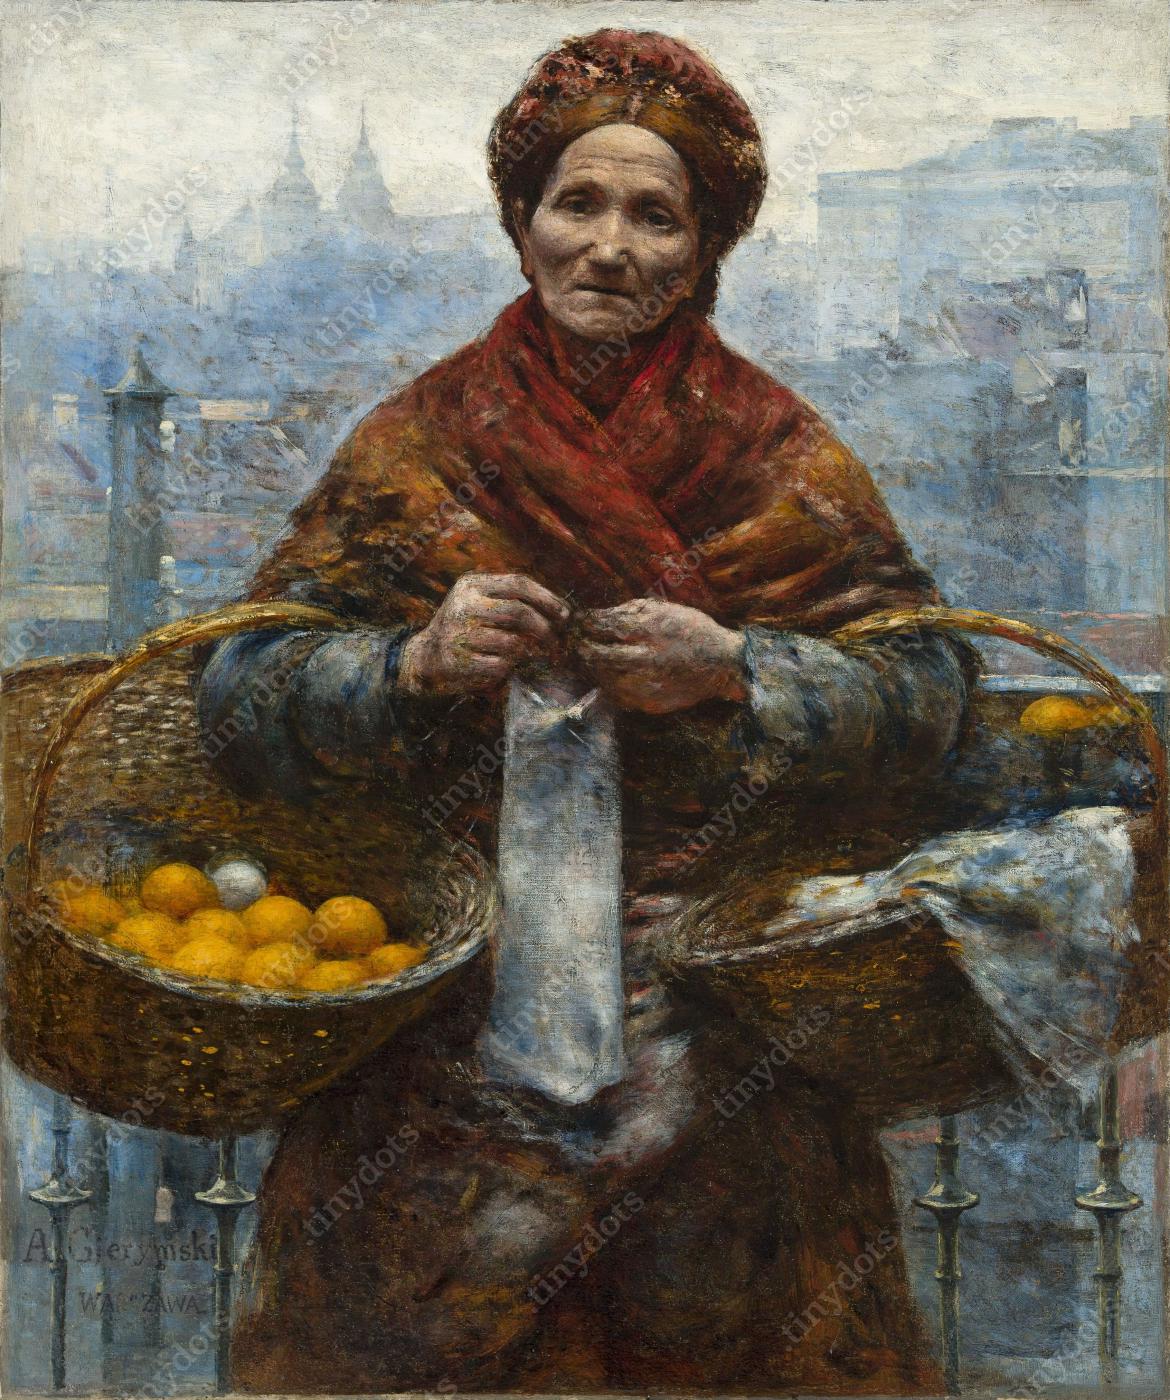 Obraz na płótnie w ramie Aleksander Gierymski - Kobieta Żydówka z pomarańczami 1881